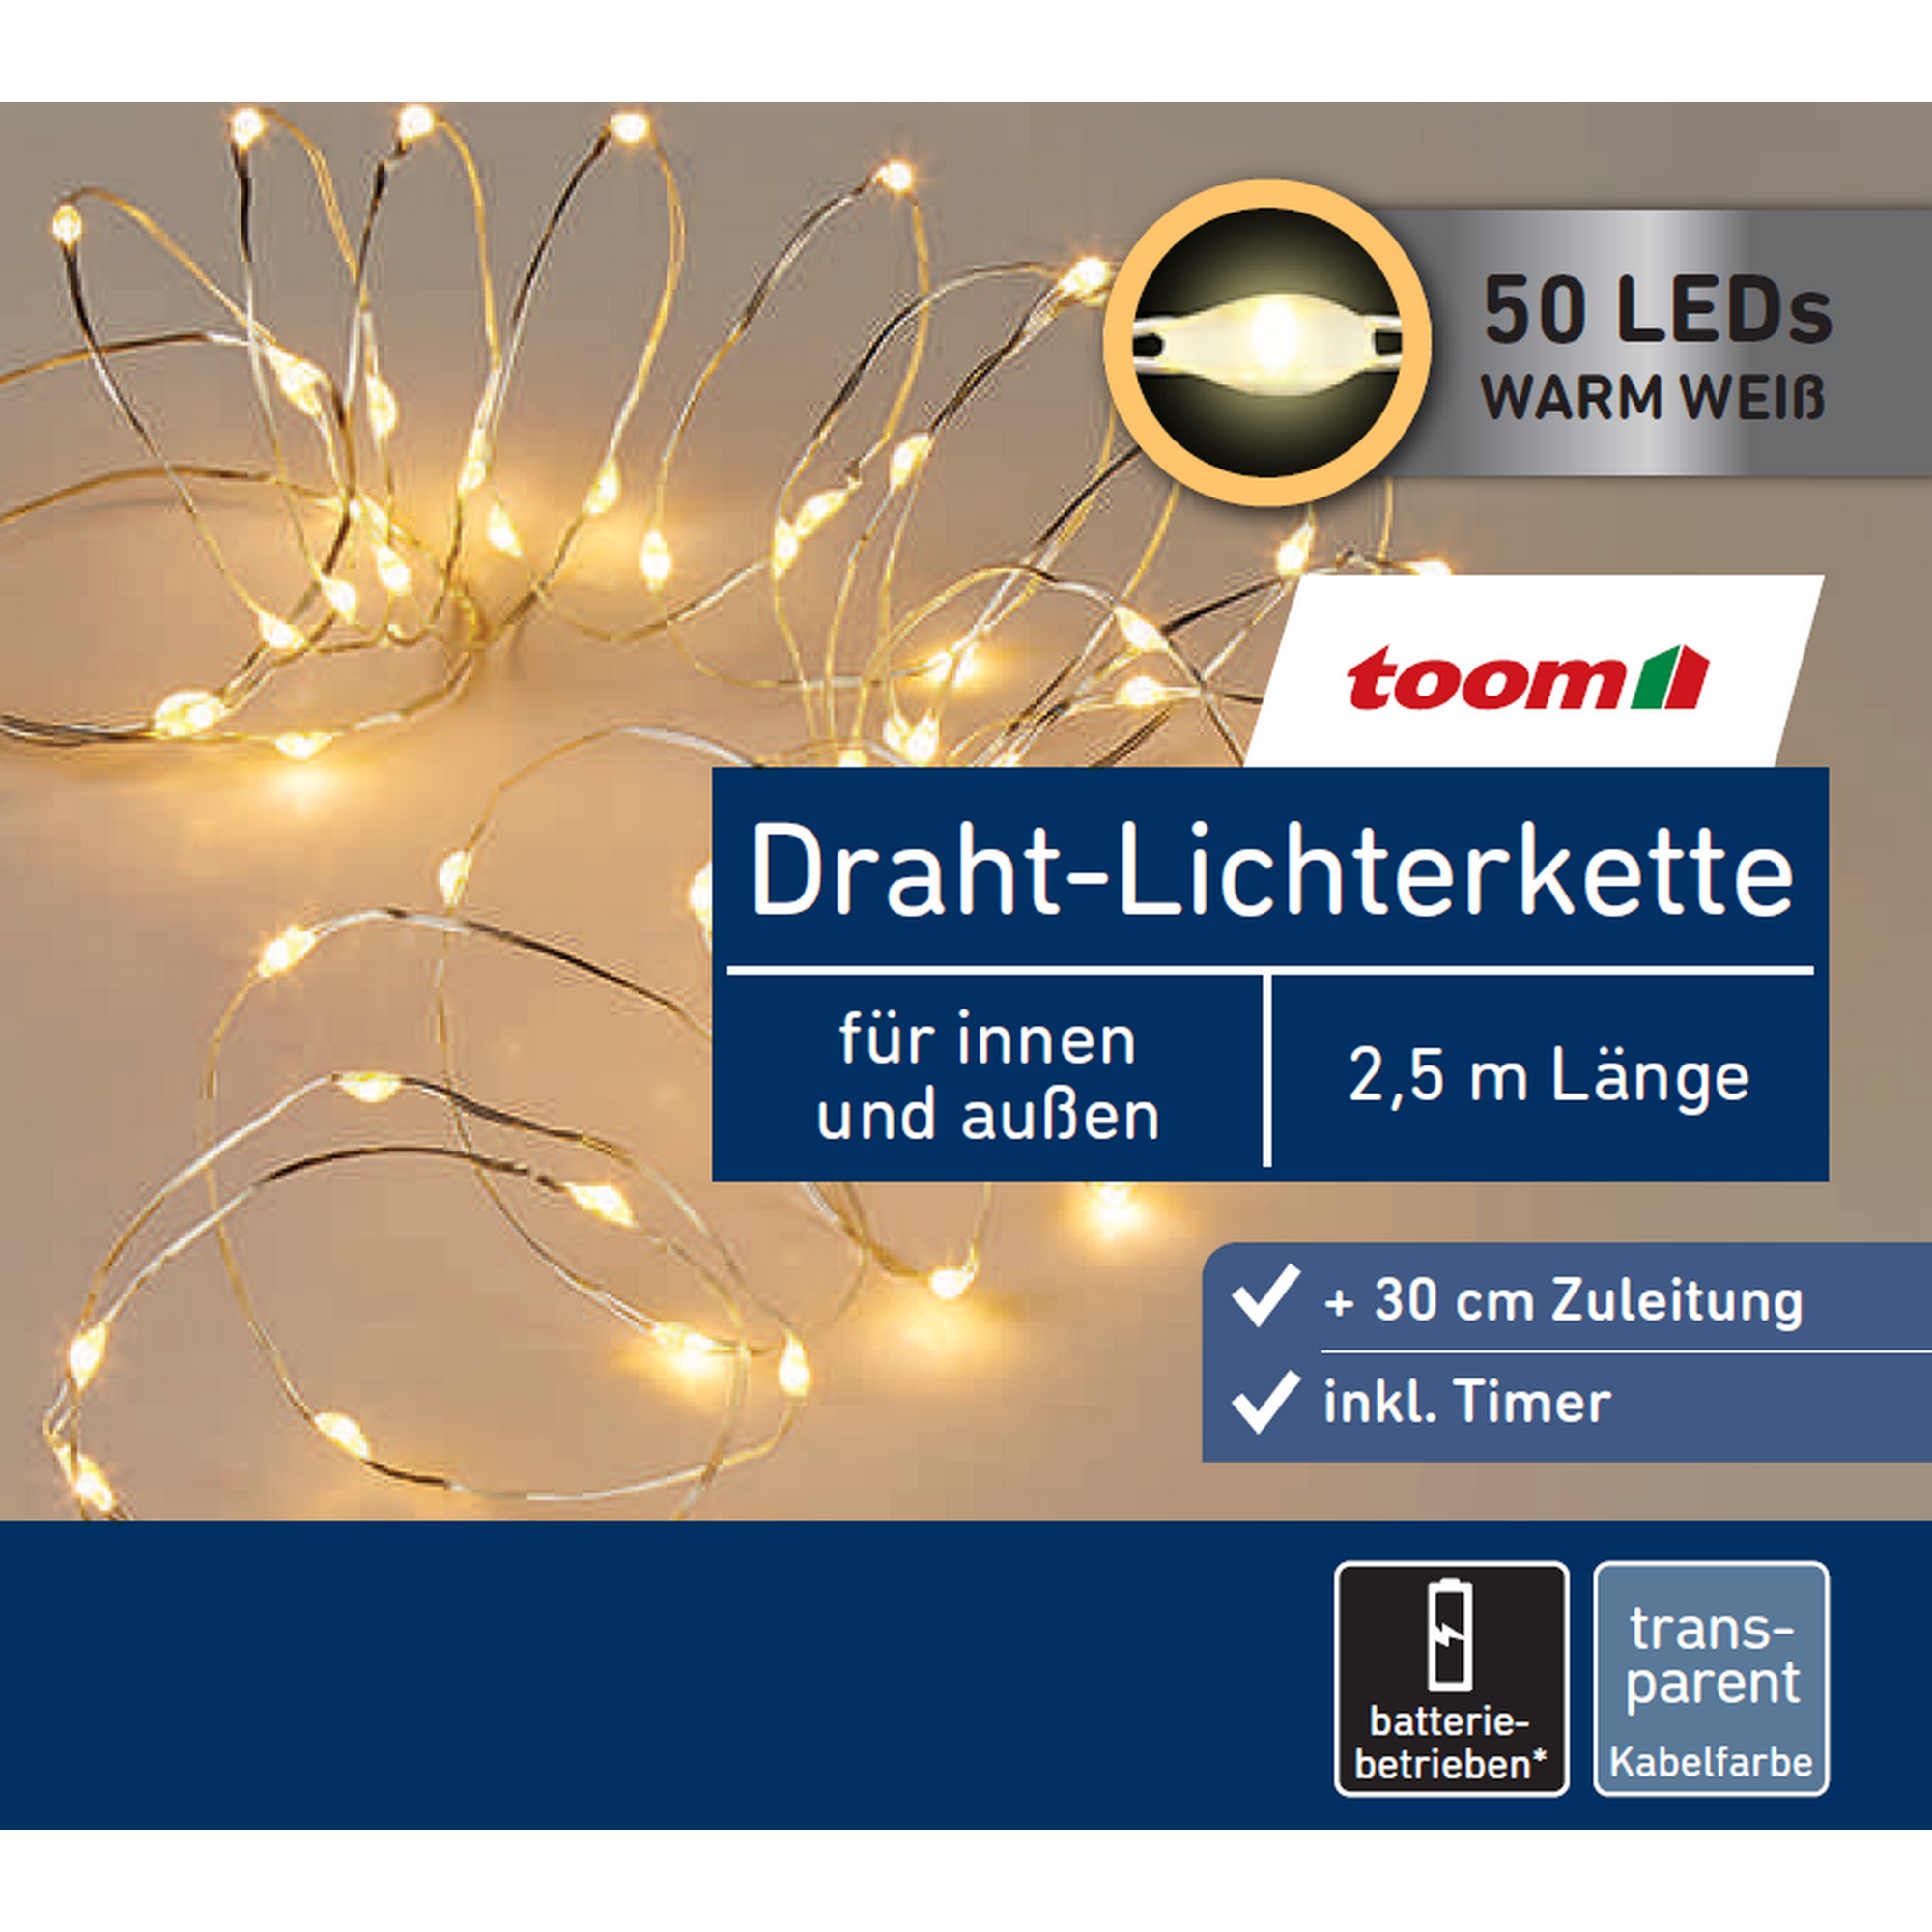 LED-Draht-Lichterkette 50 LEDs warmweiß 250 cm + product picture